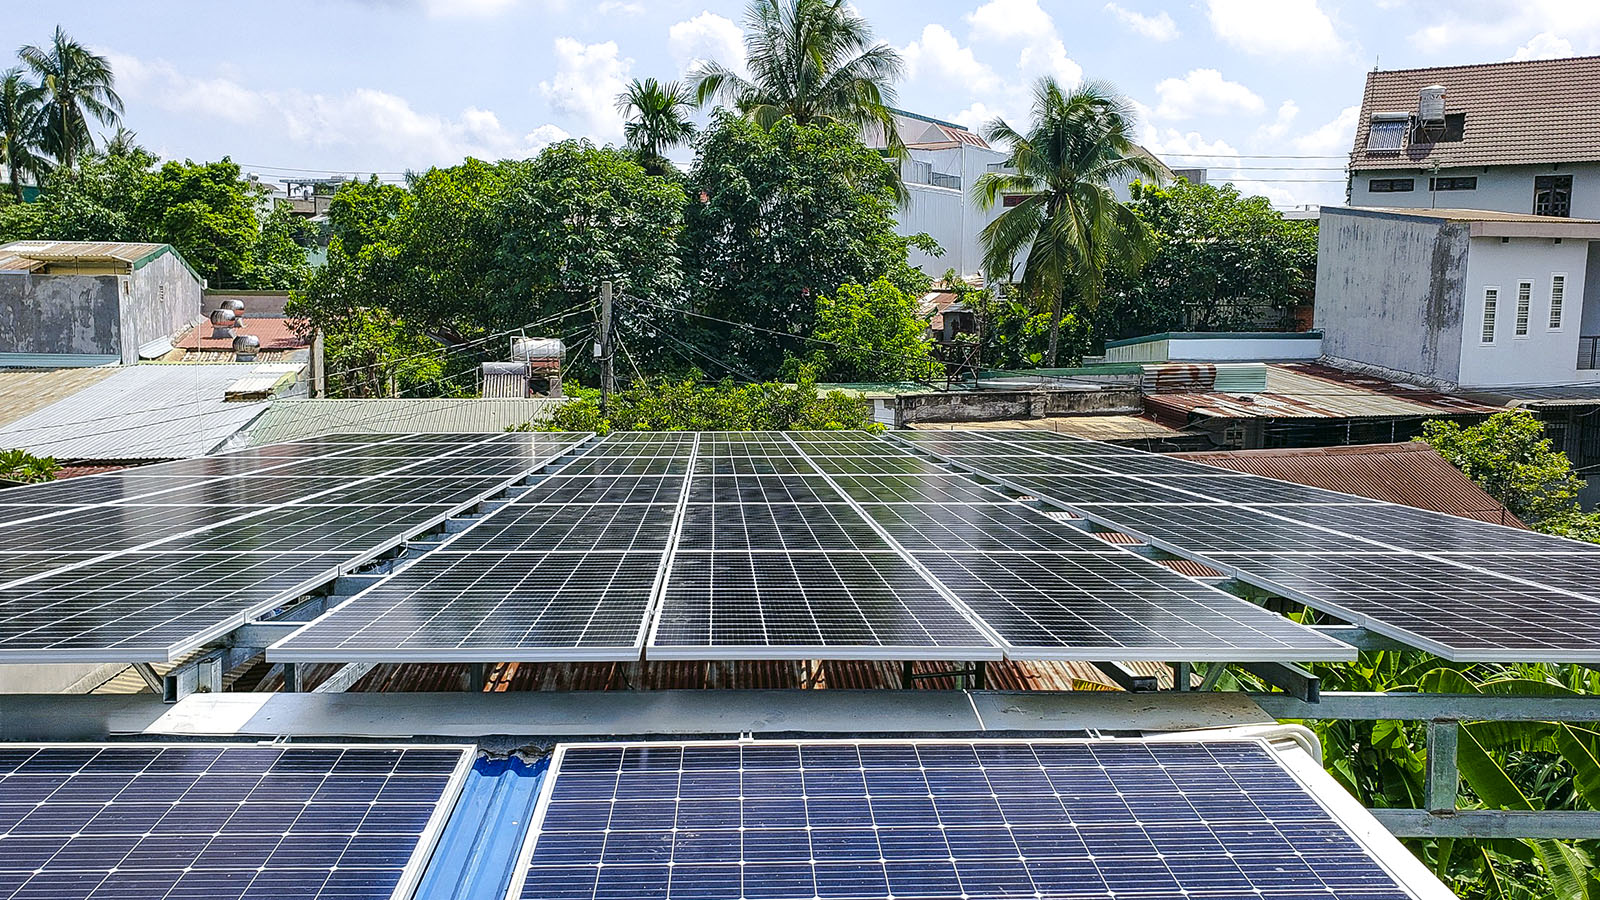 VES lắp đặt điện năng lượng mặt trời cho khách hàng anh Lạc tại Đắk Lắk